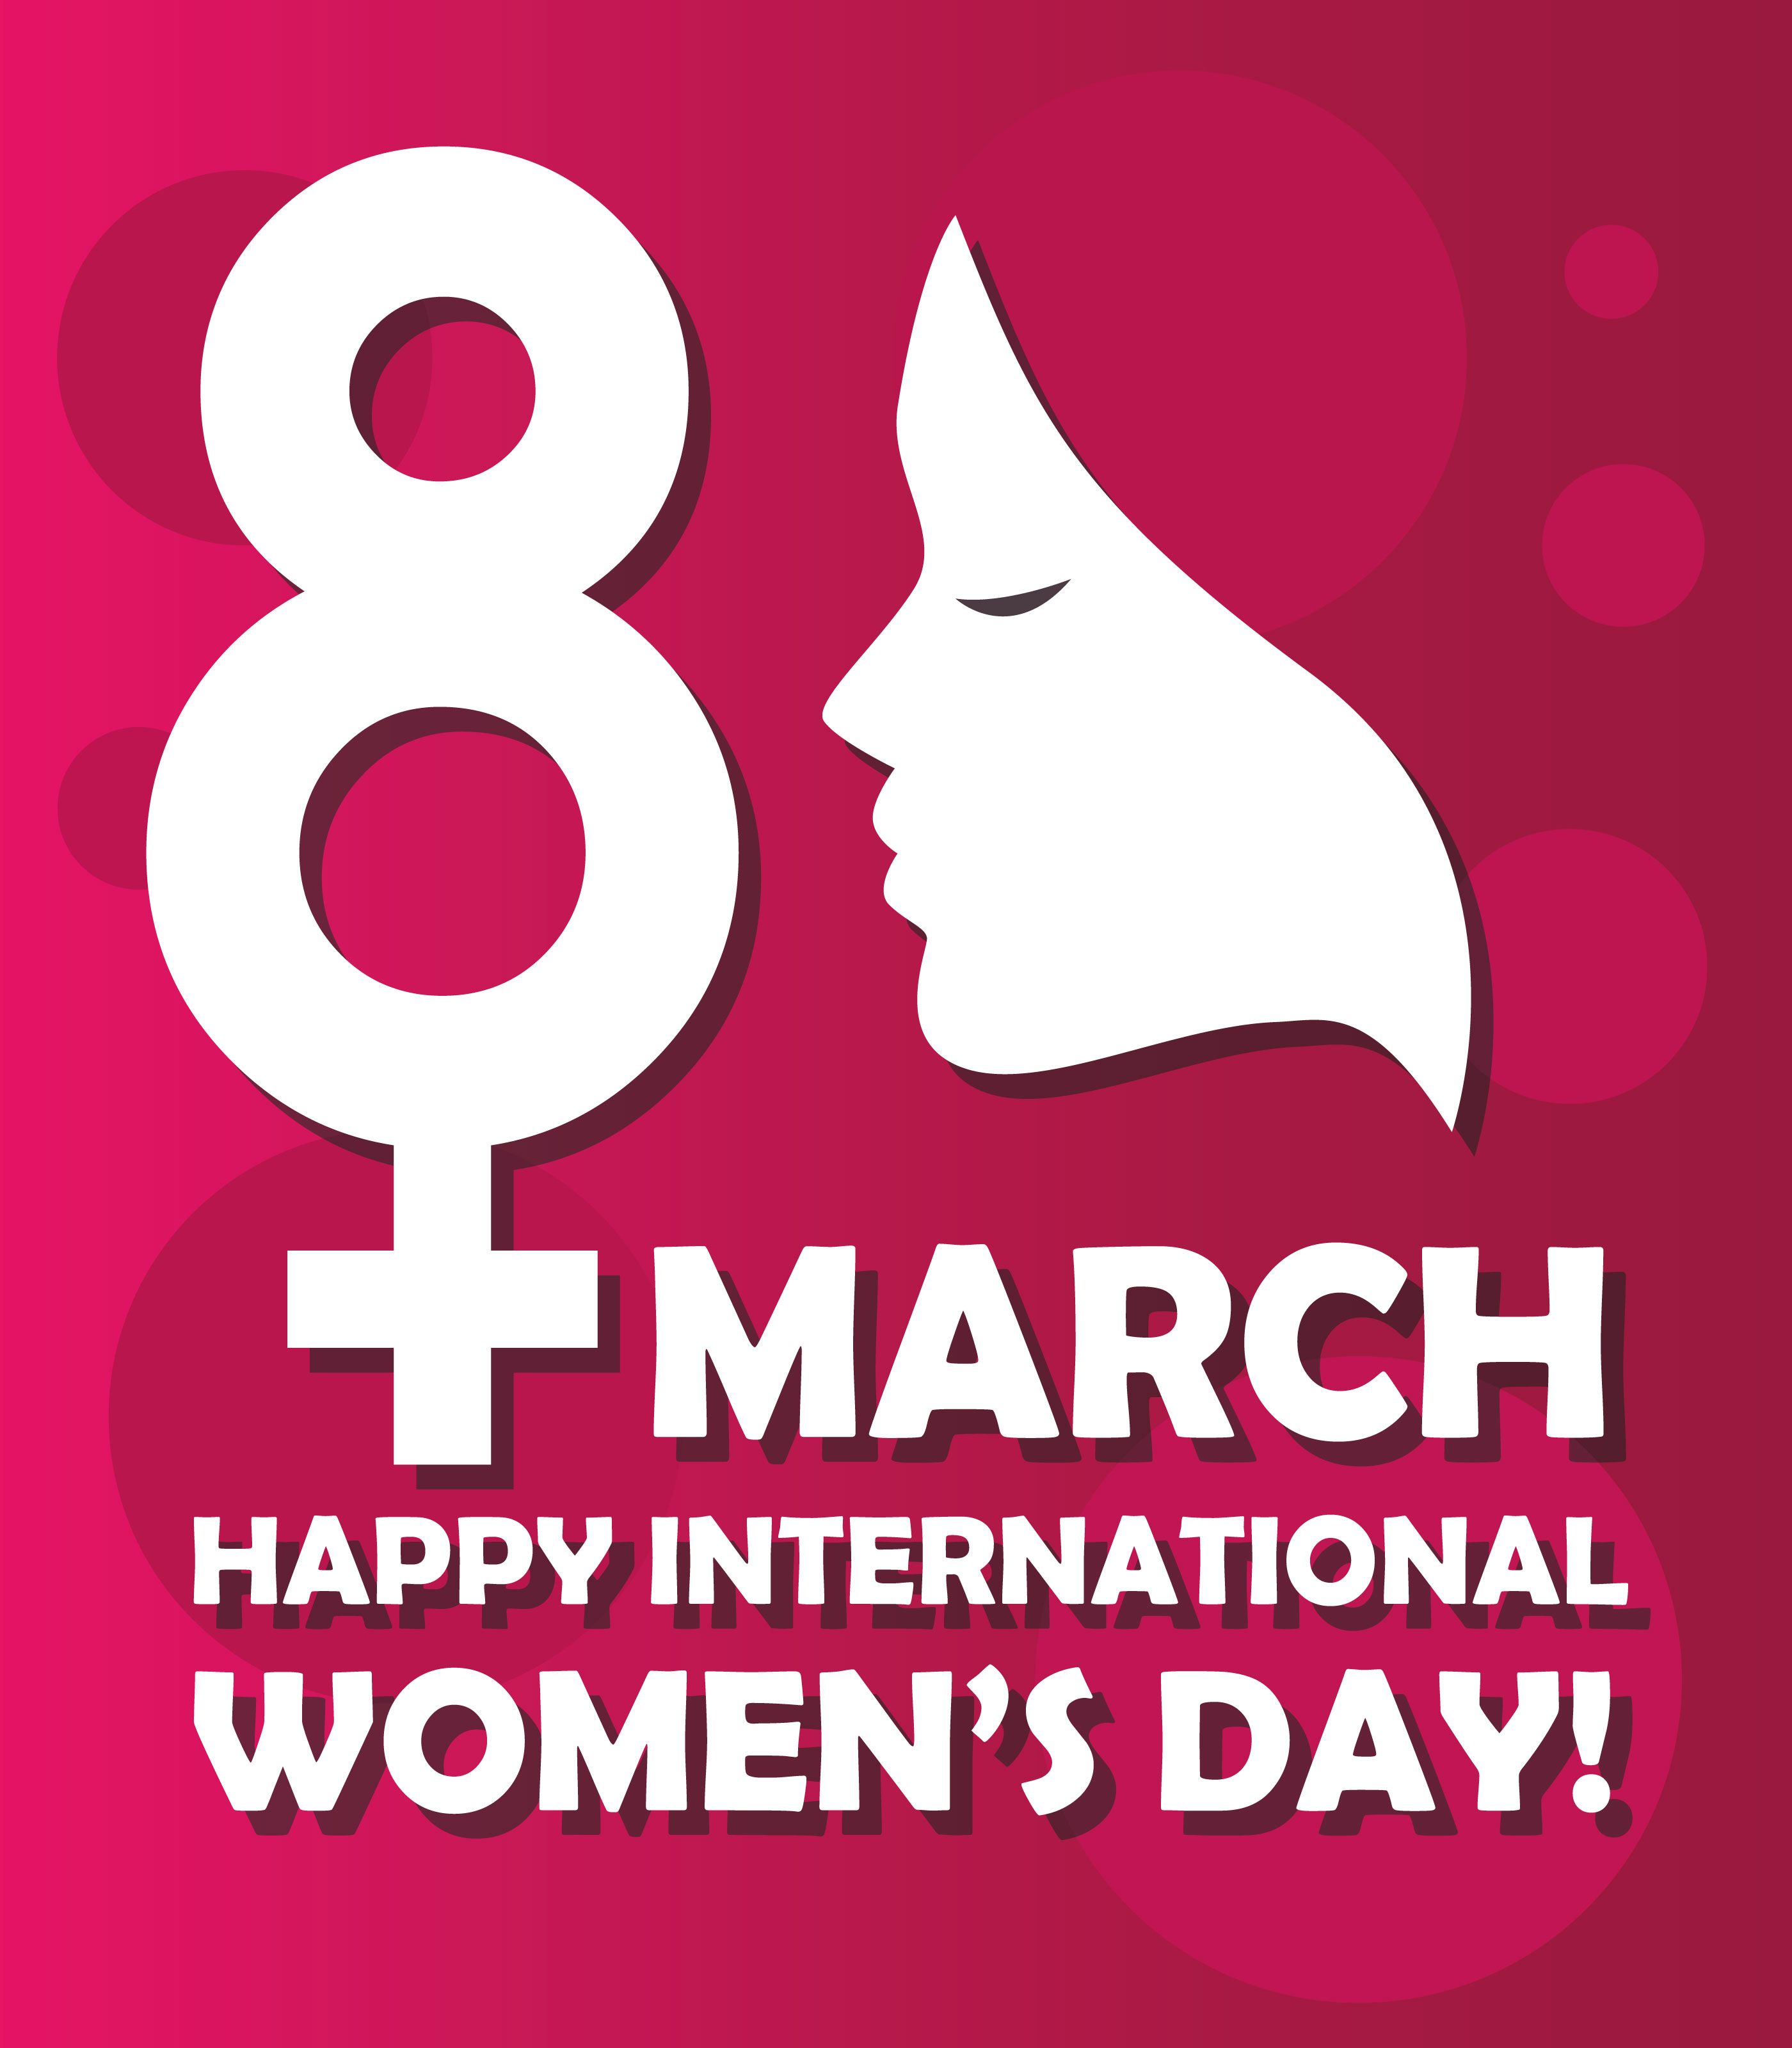 Happy International Women's Day Free Vectors, Clipart Graphics & Vector Art